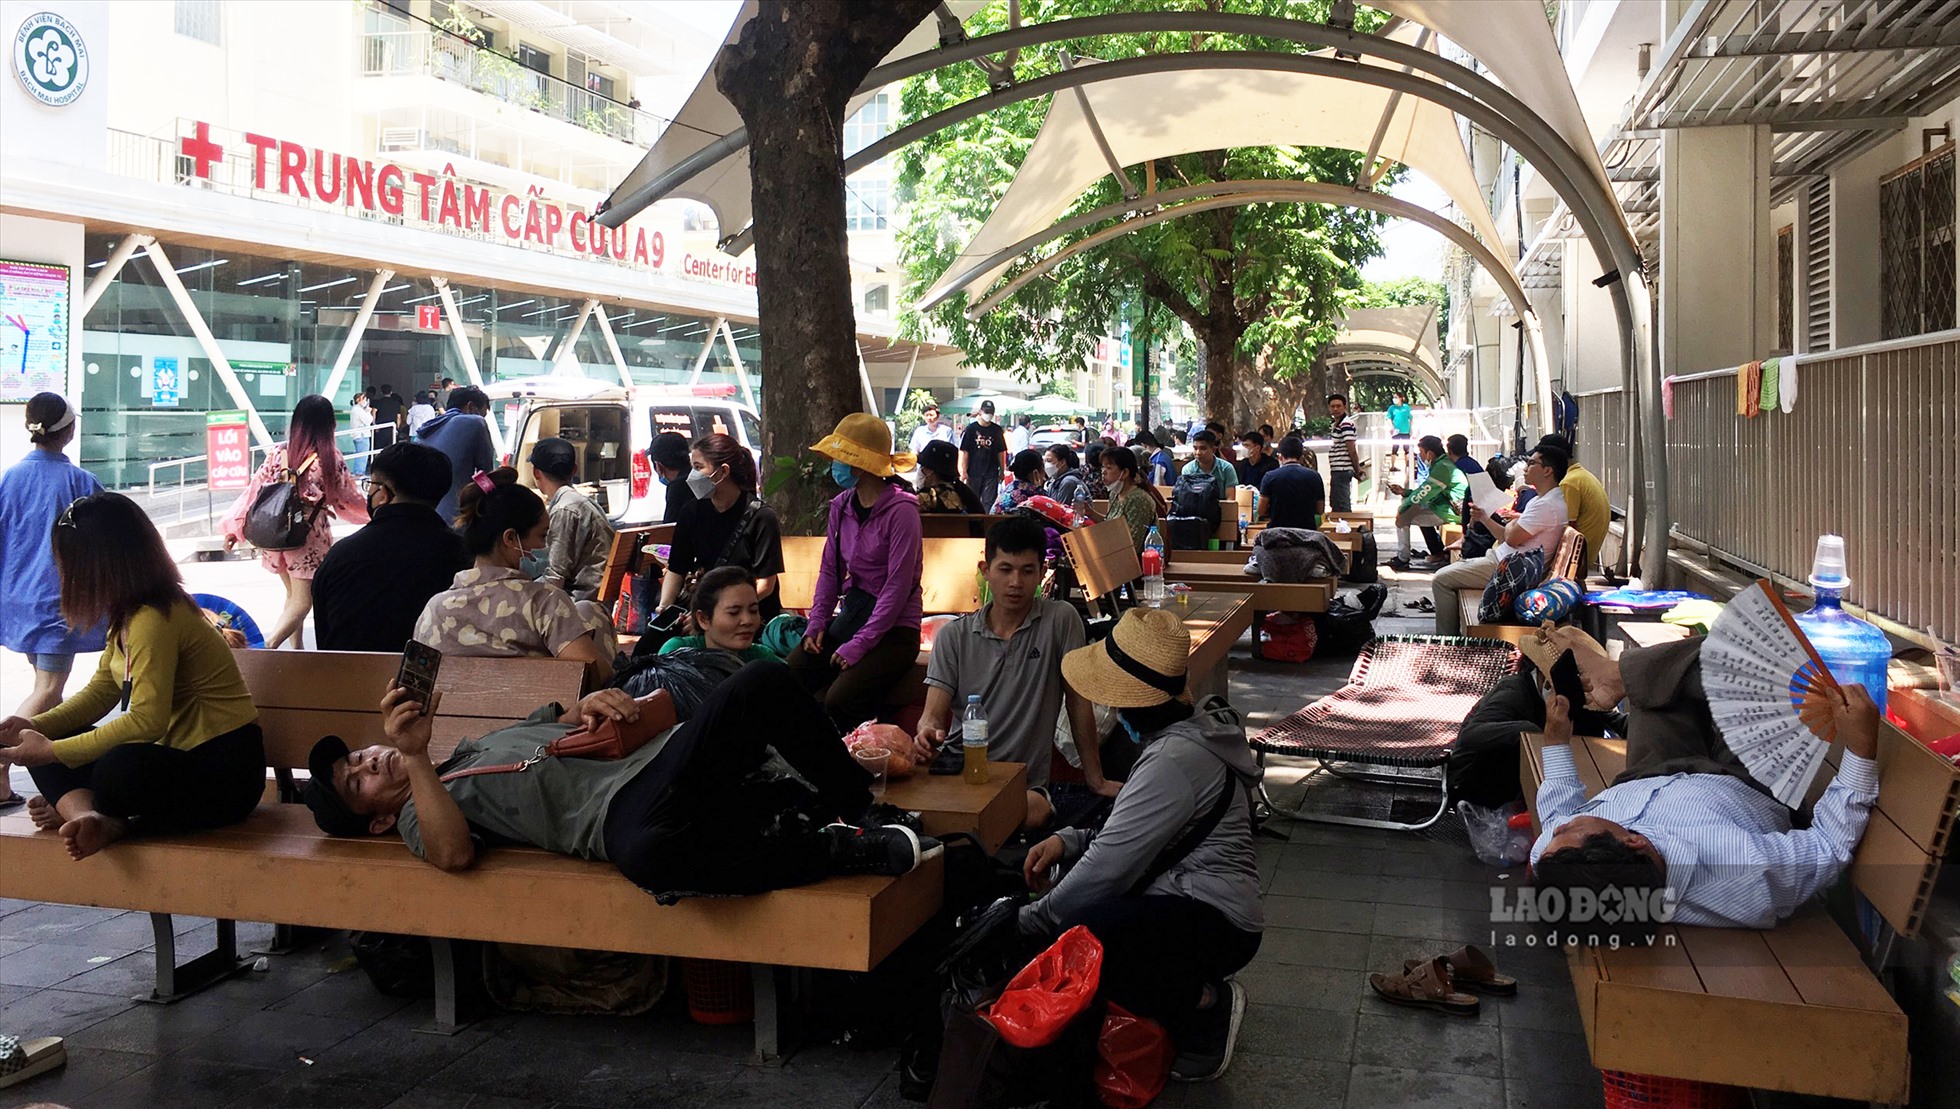 Theo ghi nhận vào khoảng 12h ngày 18.5, tại bệnh viện Bạch Mai, dưới thời tiết nắng nóng, nhiều người nhà bệnh nhân vẫn phải ngồi dưới gốc cây để tranh thủ ăn uống, nghỉ ngơi. Bất kể chỗ nào có bóng râm là có người ngồi tránh nắng.